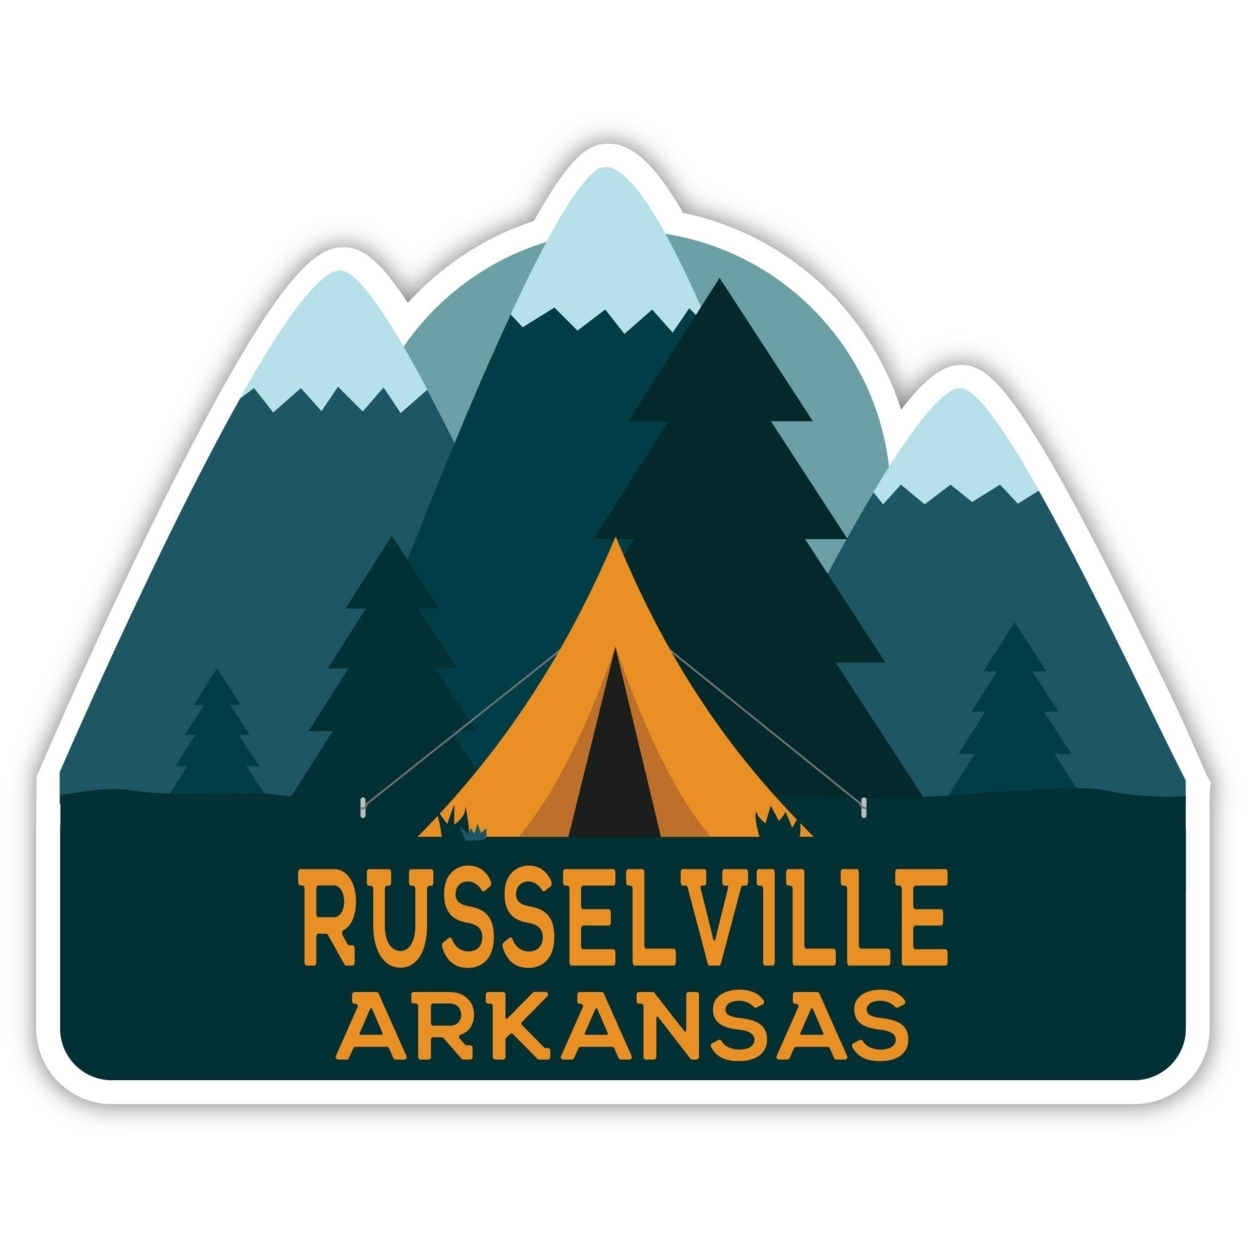 Russelville Arkansas Souvenir Decorative Stickers (Choose Theme And Size) - Single Unit, 4-Inch, Tent